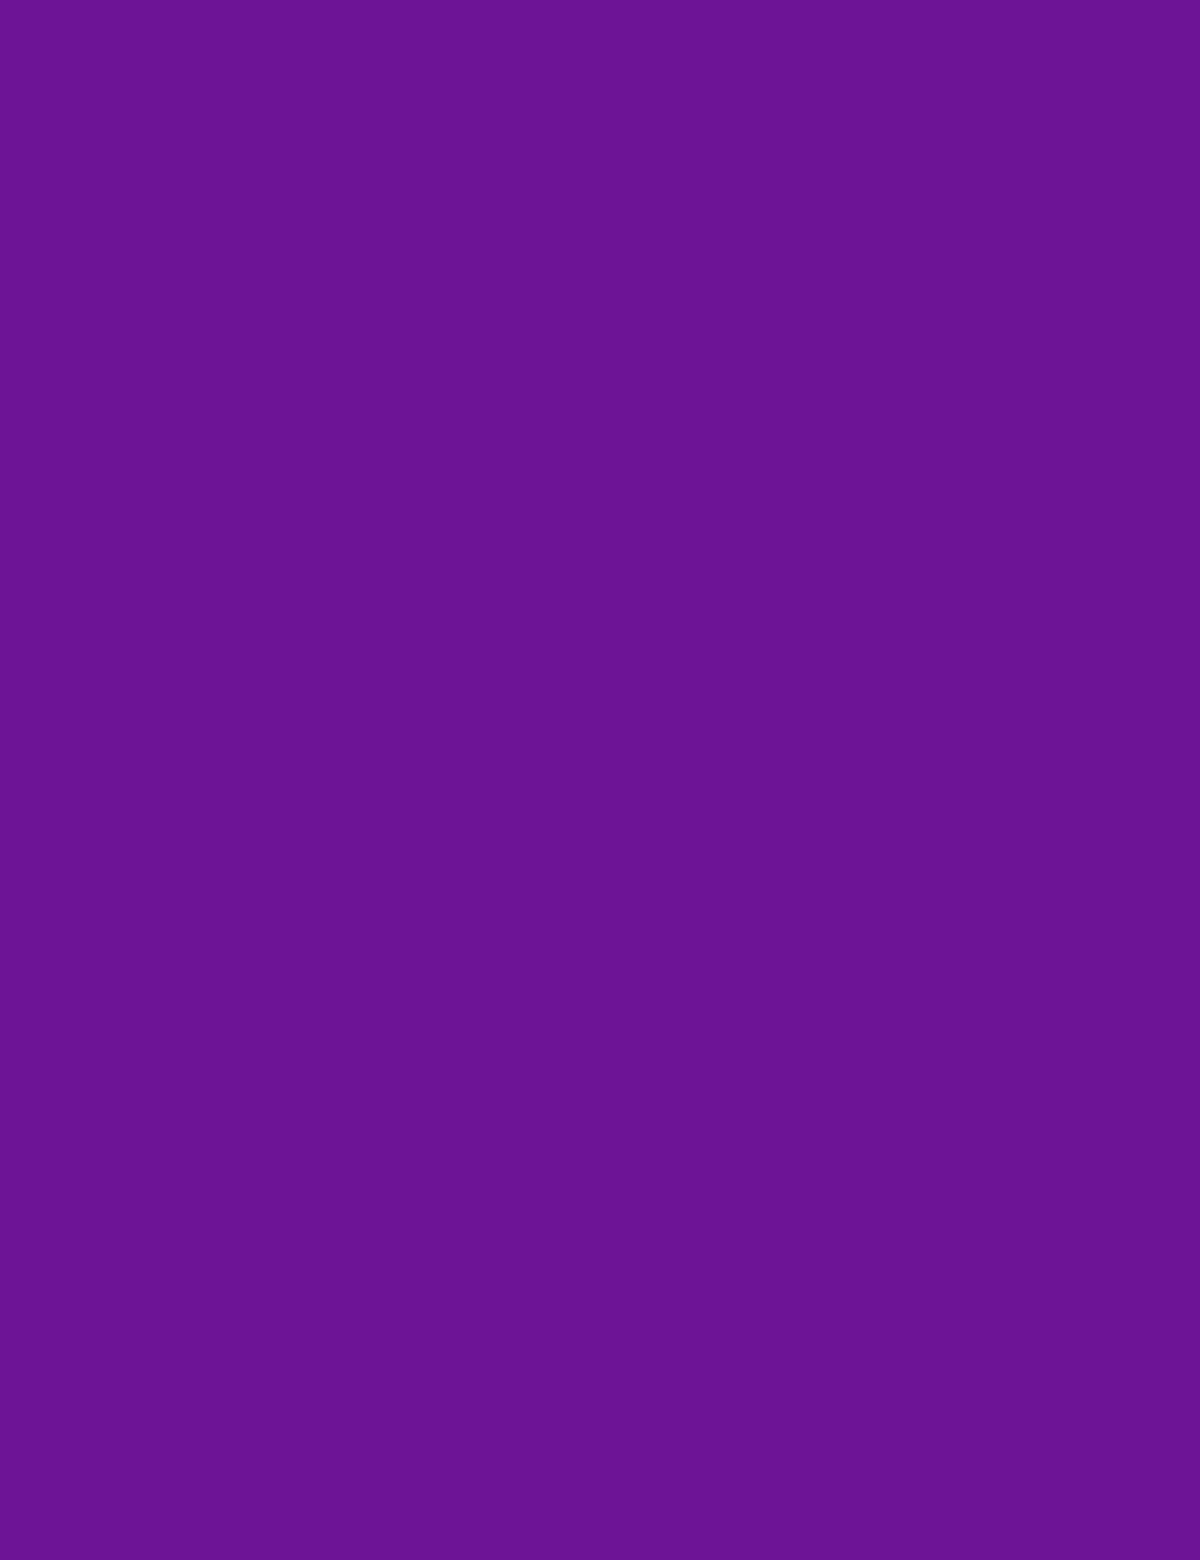 Dark Violet Purple Photography Solid Fabric Backdrop Shopbackdrop